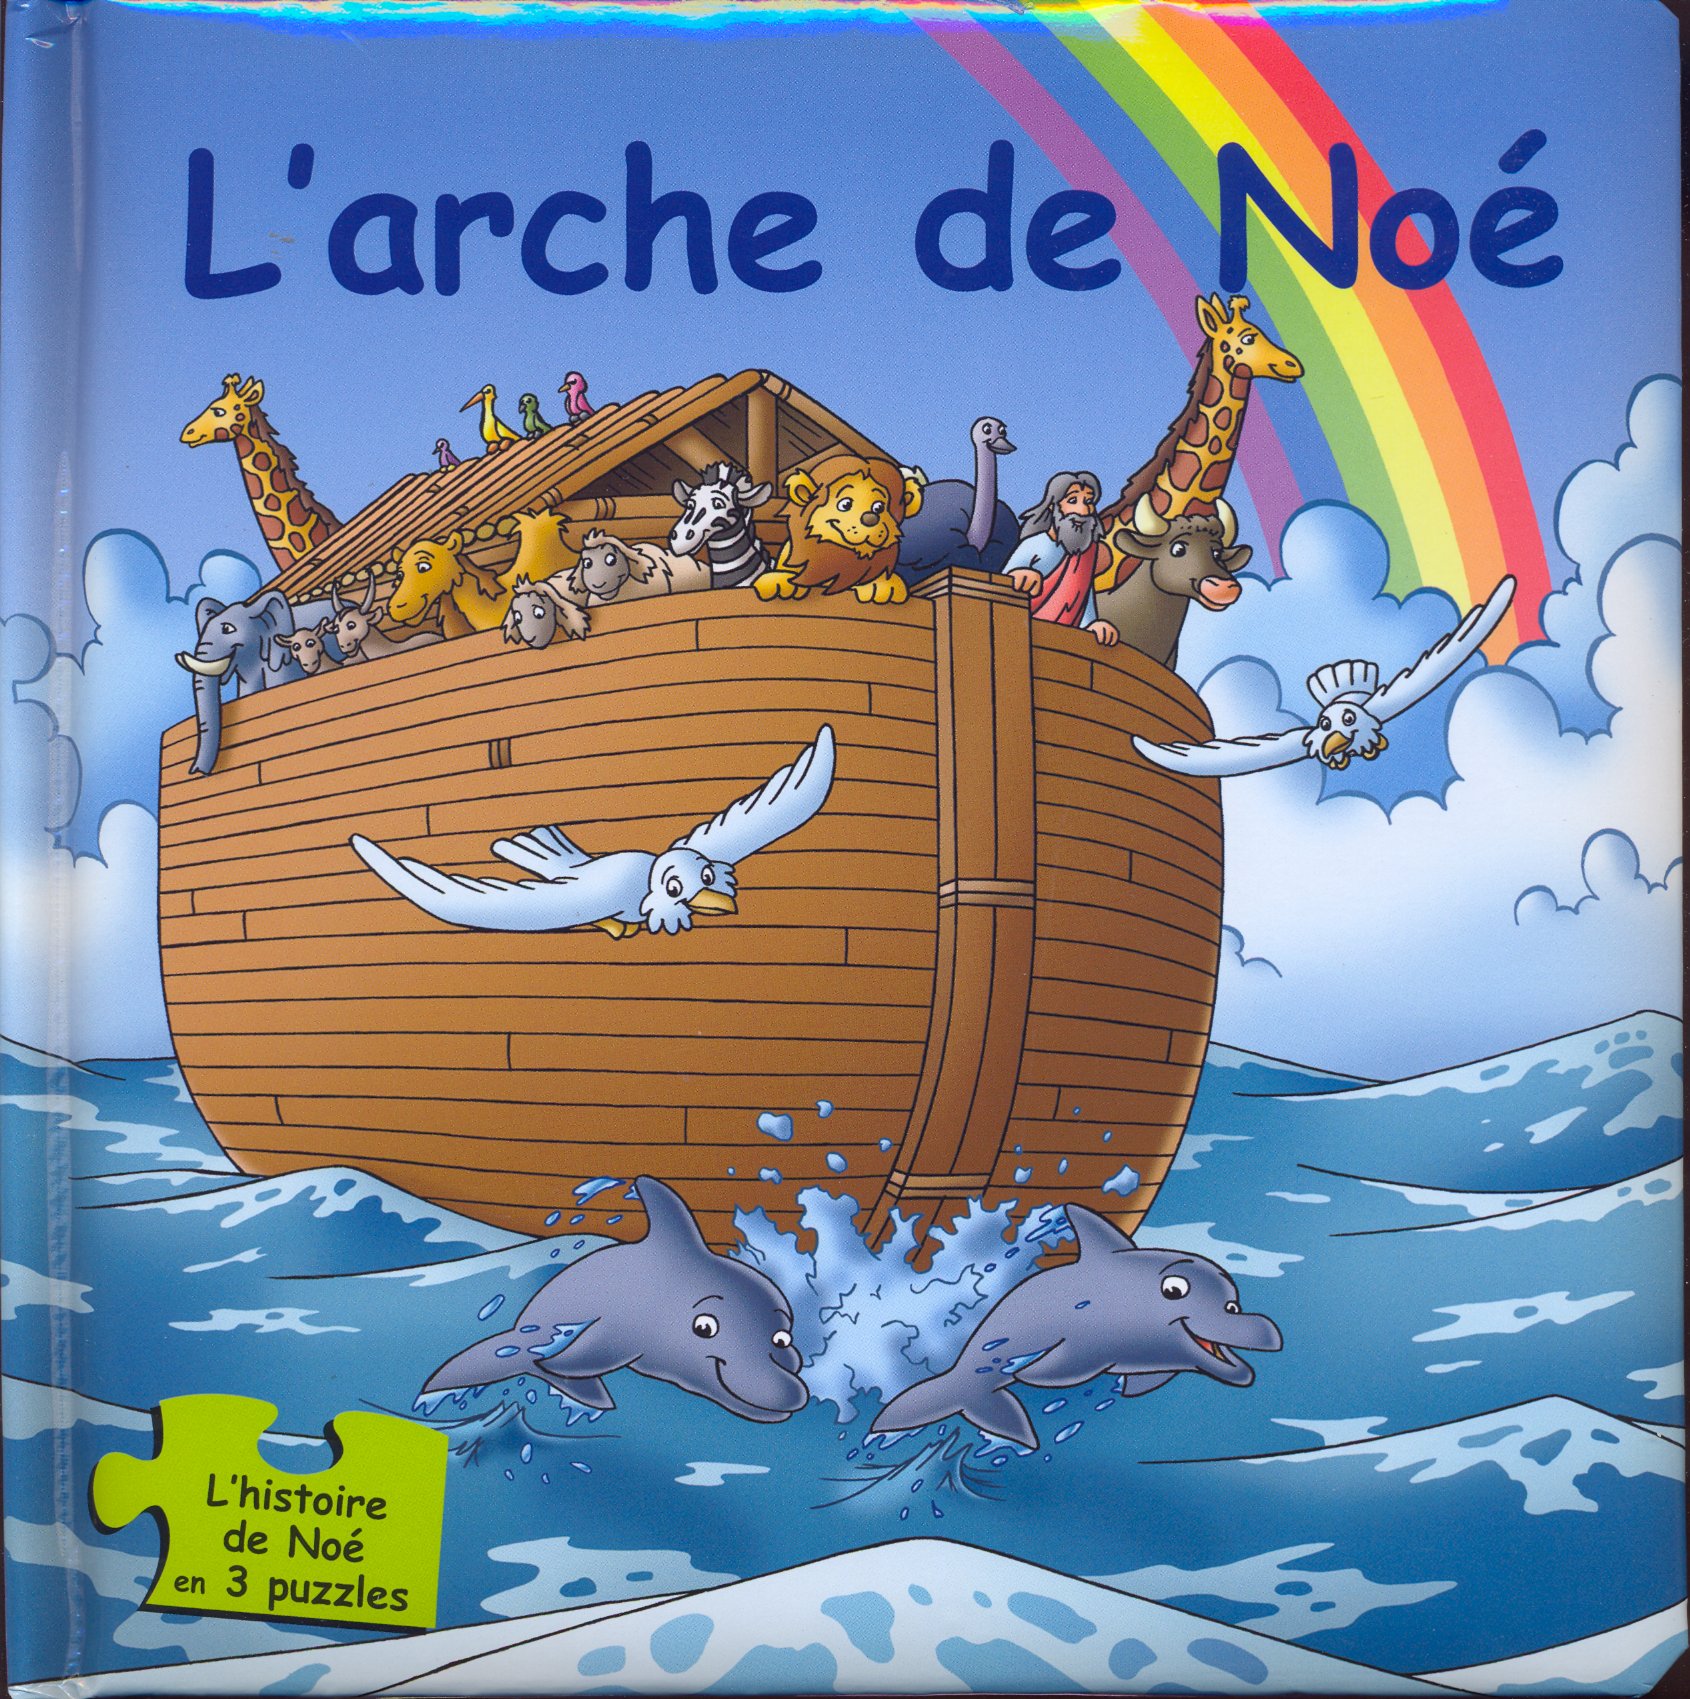 Arche de Noé (L') - En 3 puzzles